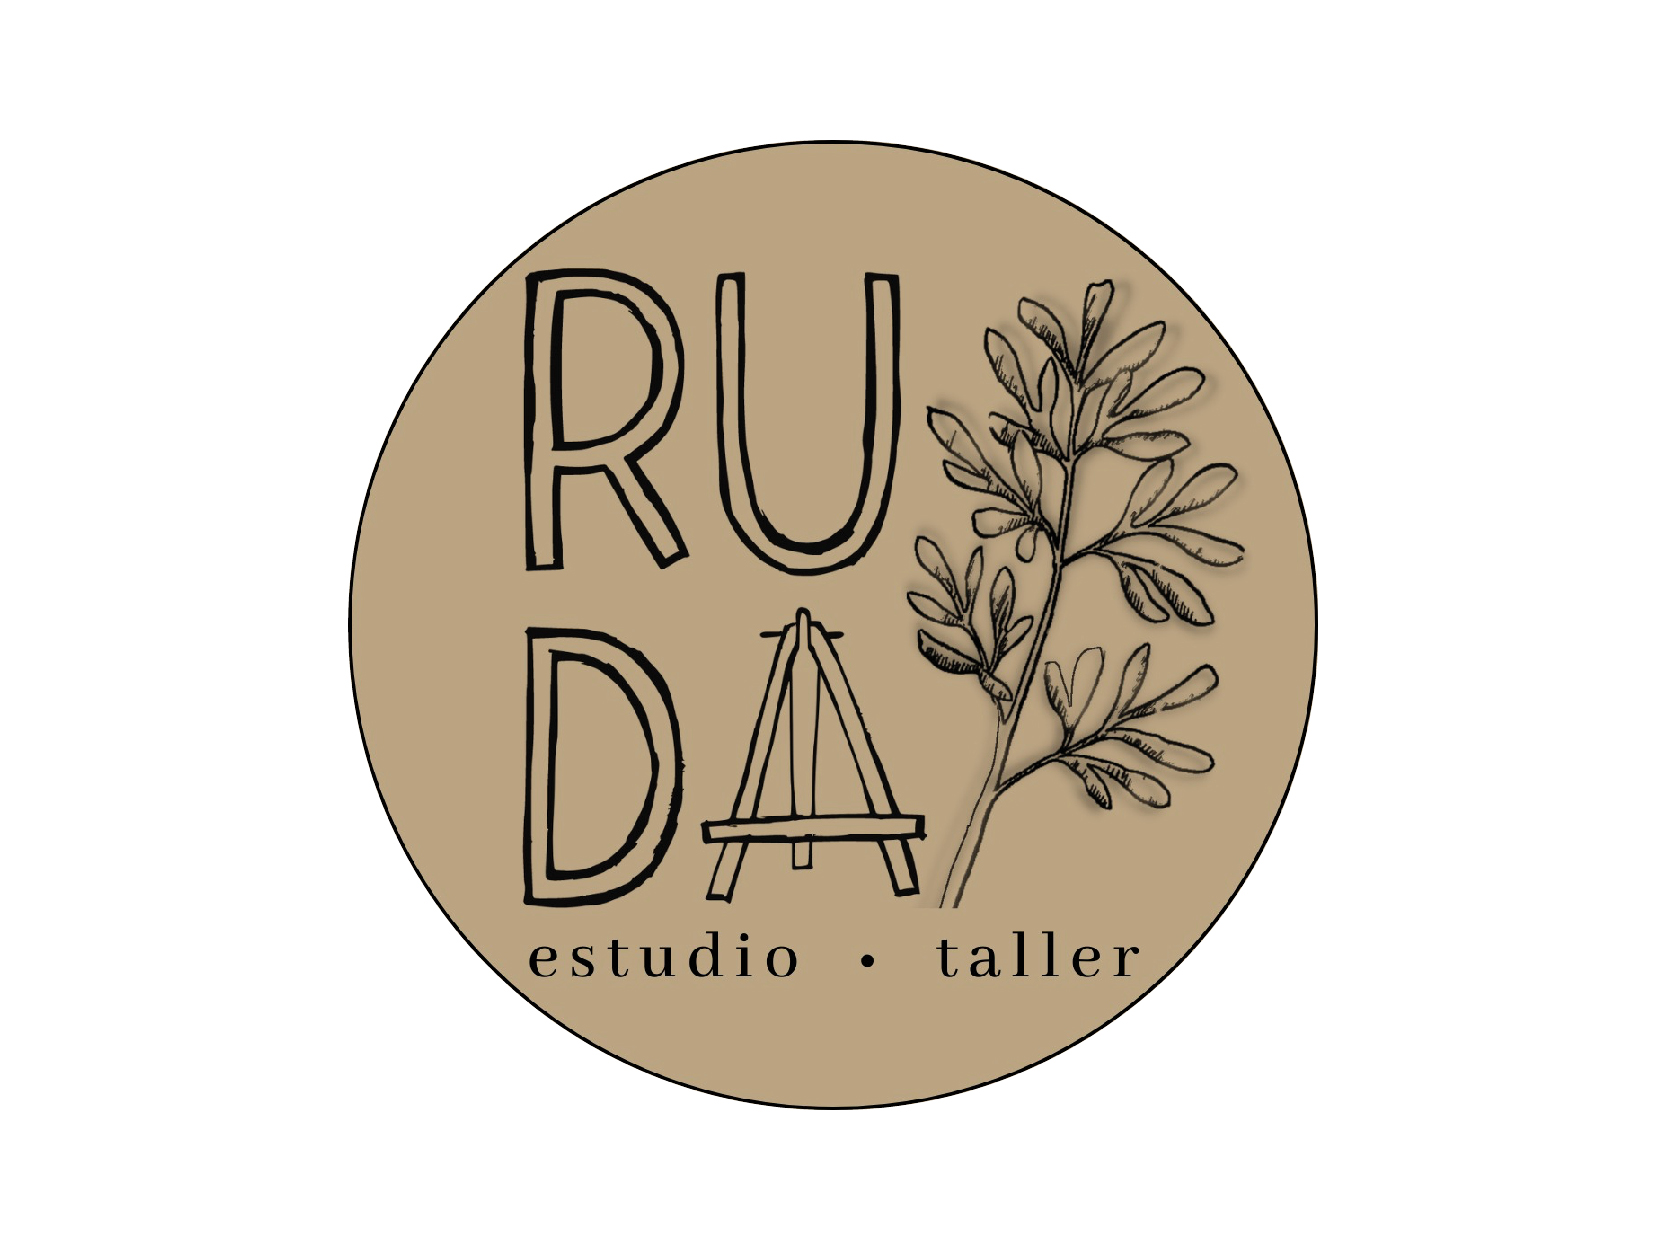 RUDA ESTUDIO TALLER